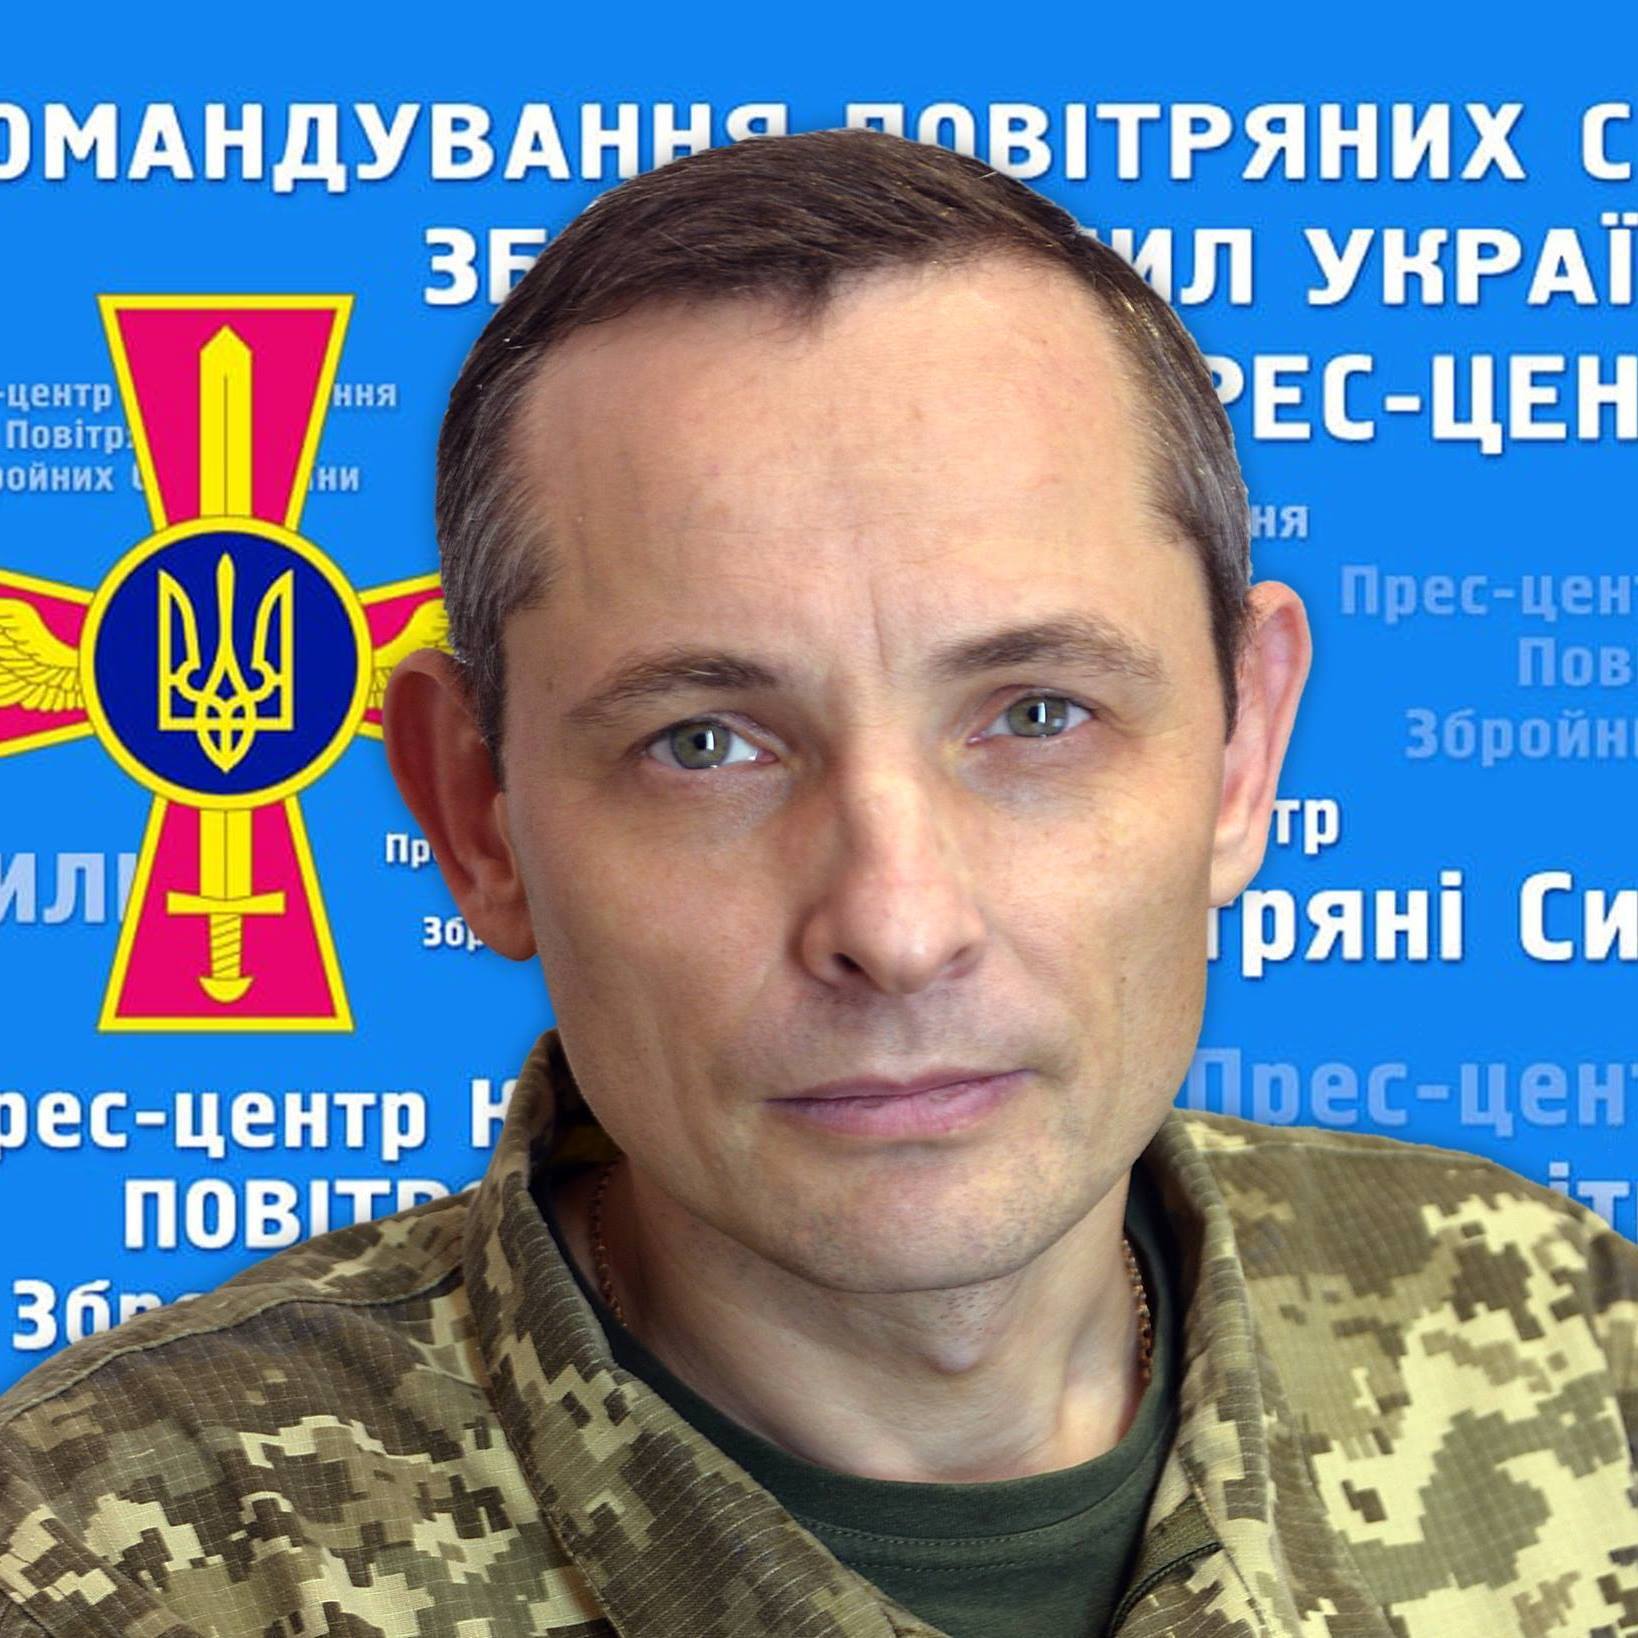 Спікер командування Повітряних сил ЗС України Юрій Ігнат